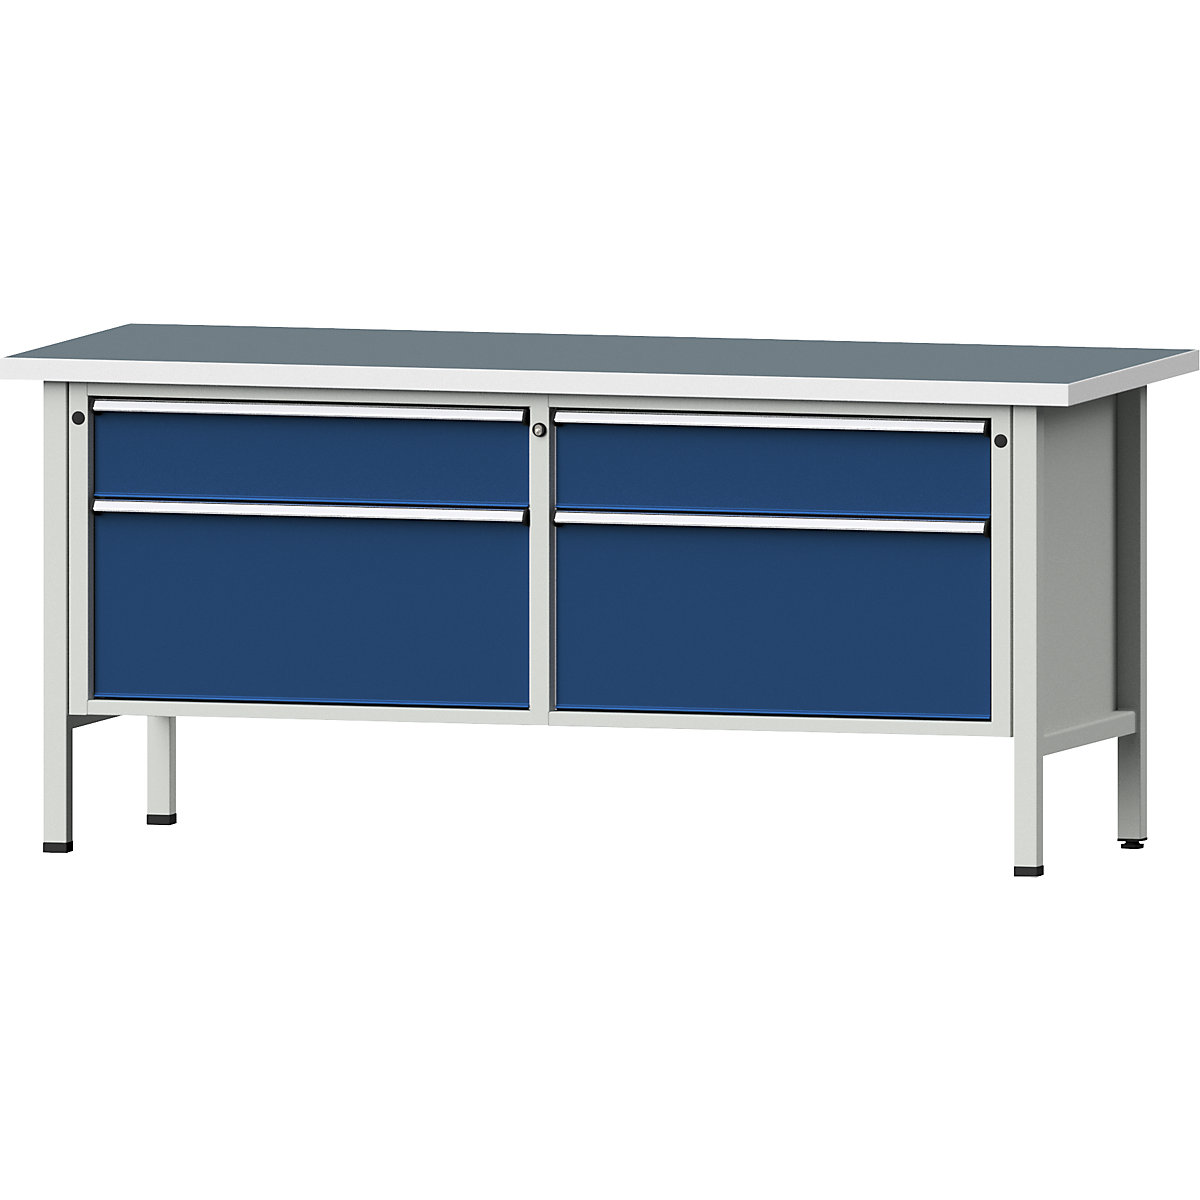 Dílenské stoly s šířkou 2000 mm, rámová konstrukce – ANKE, 4 zásuvky, univerzální deska, výška 890 mm